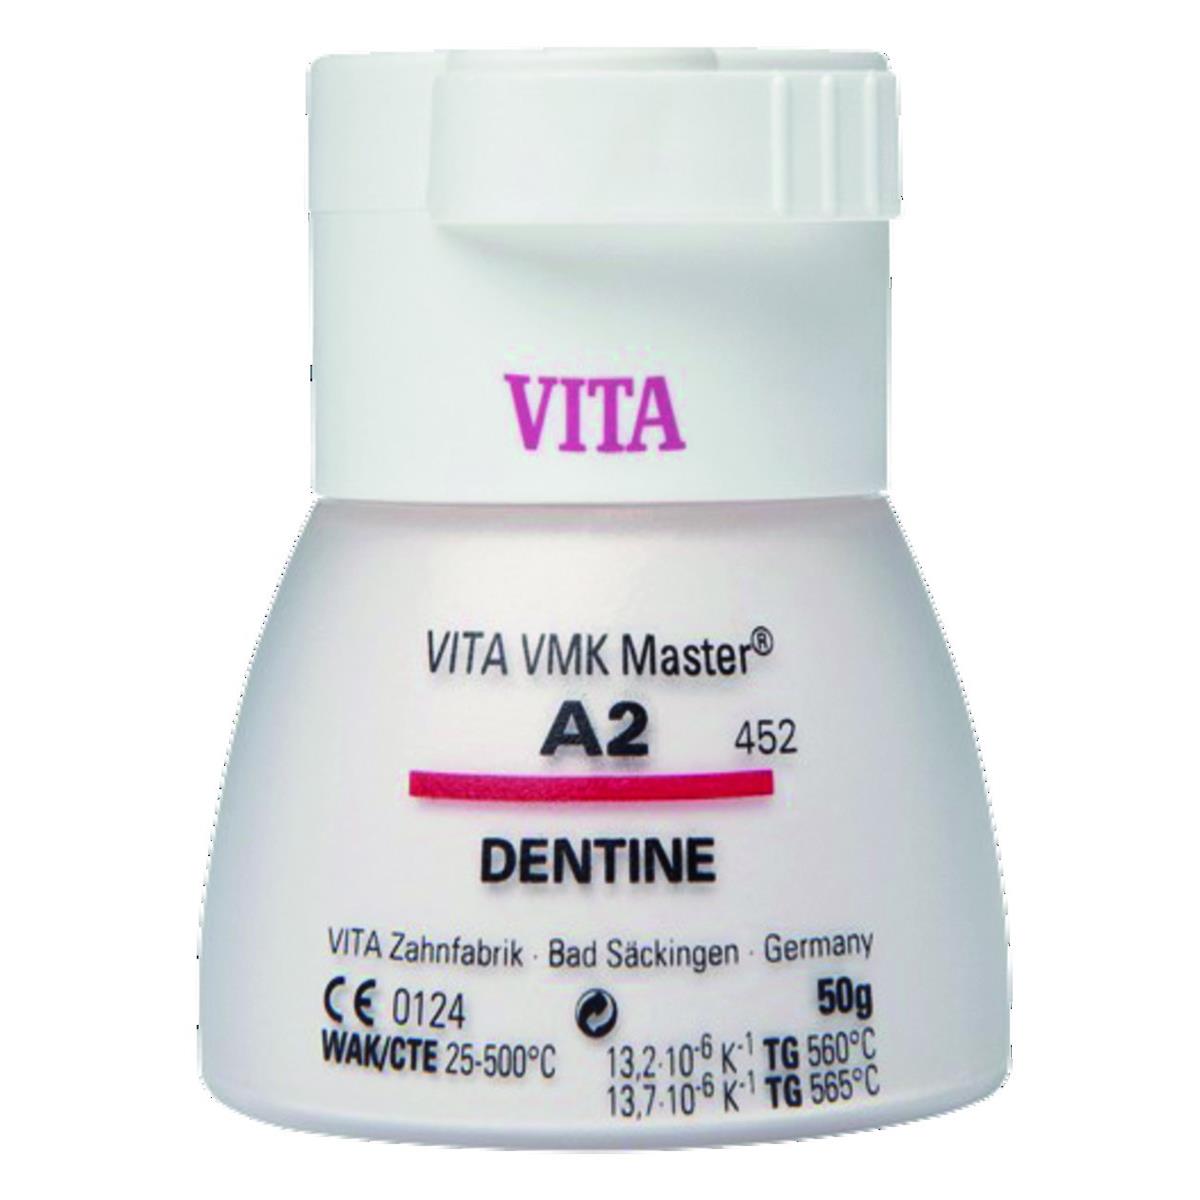 VMK Master VITA - Dentine - 1M2 - Le flacon de 50 g